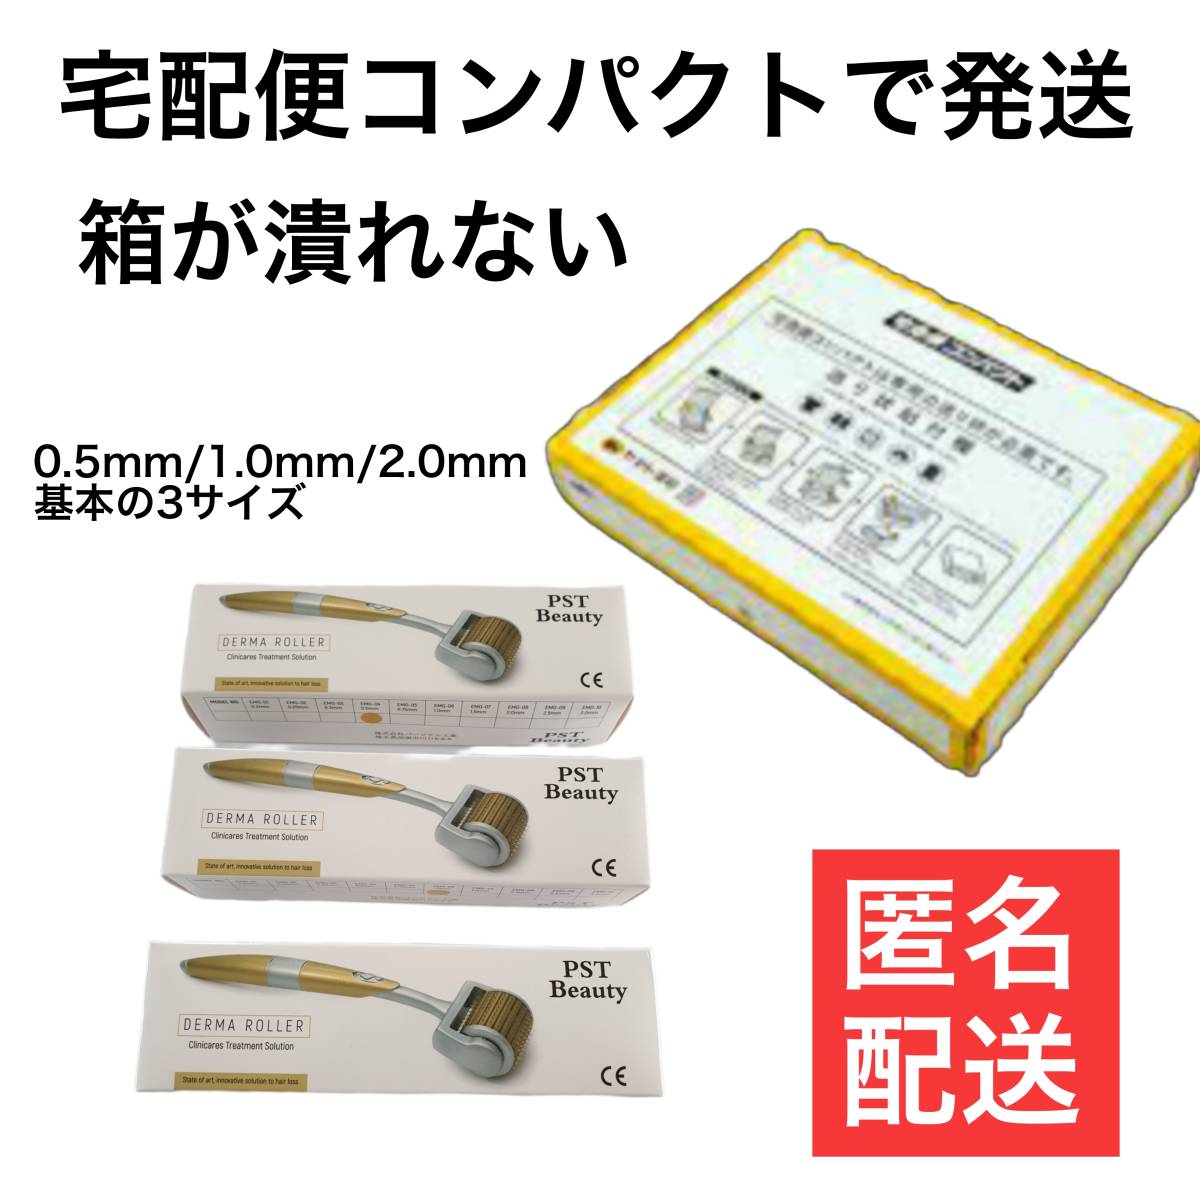 3 шт. комплект Япония производитель производства da-ma ролик 3 вид 0.5/1.0/2.0 относящийся :DNS ролик da-ma авторучка da-ma штамп номер 589